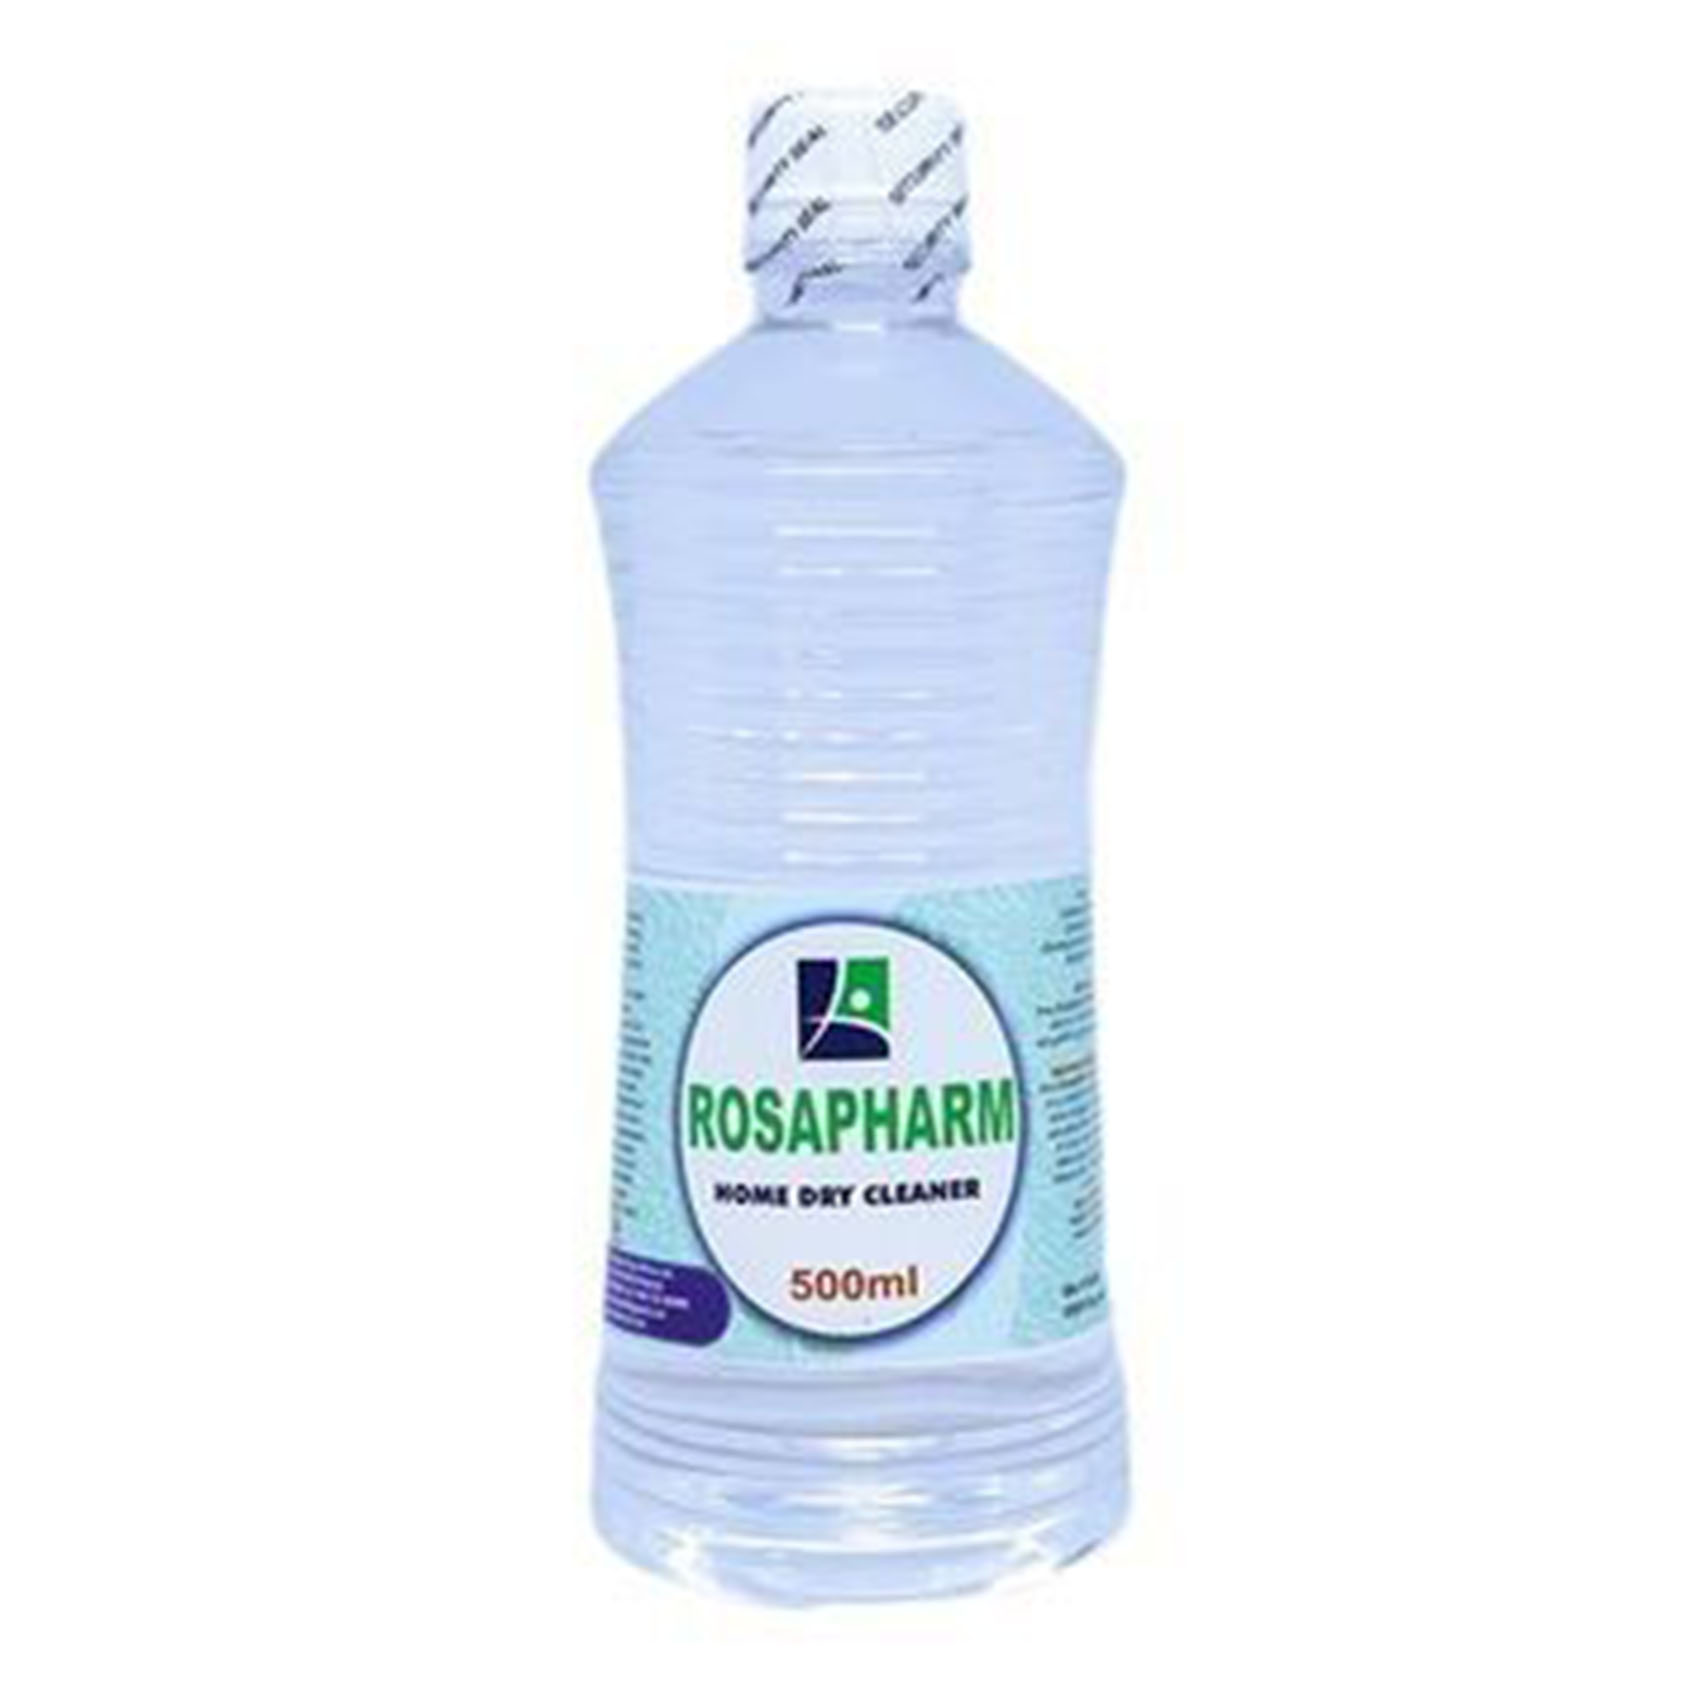 Rosapharm Home Dry Cleaner 500 ml